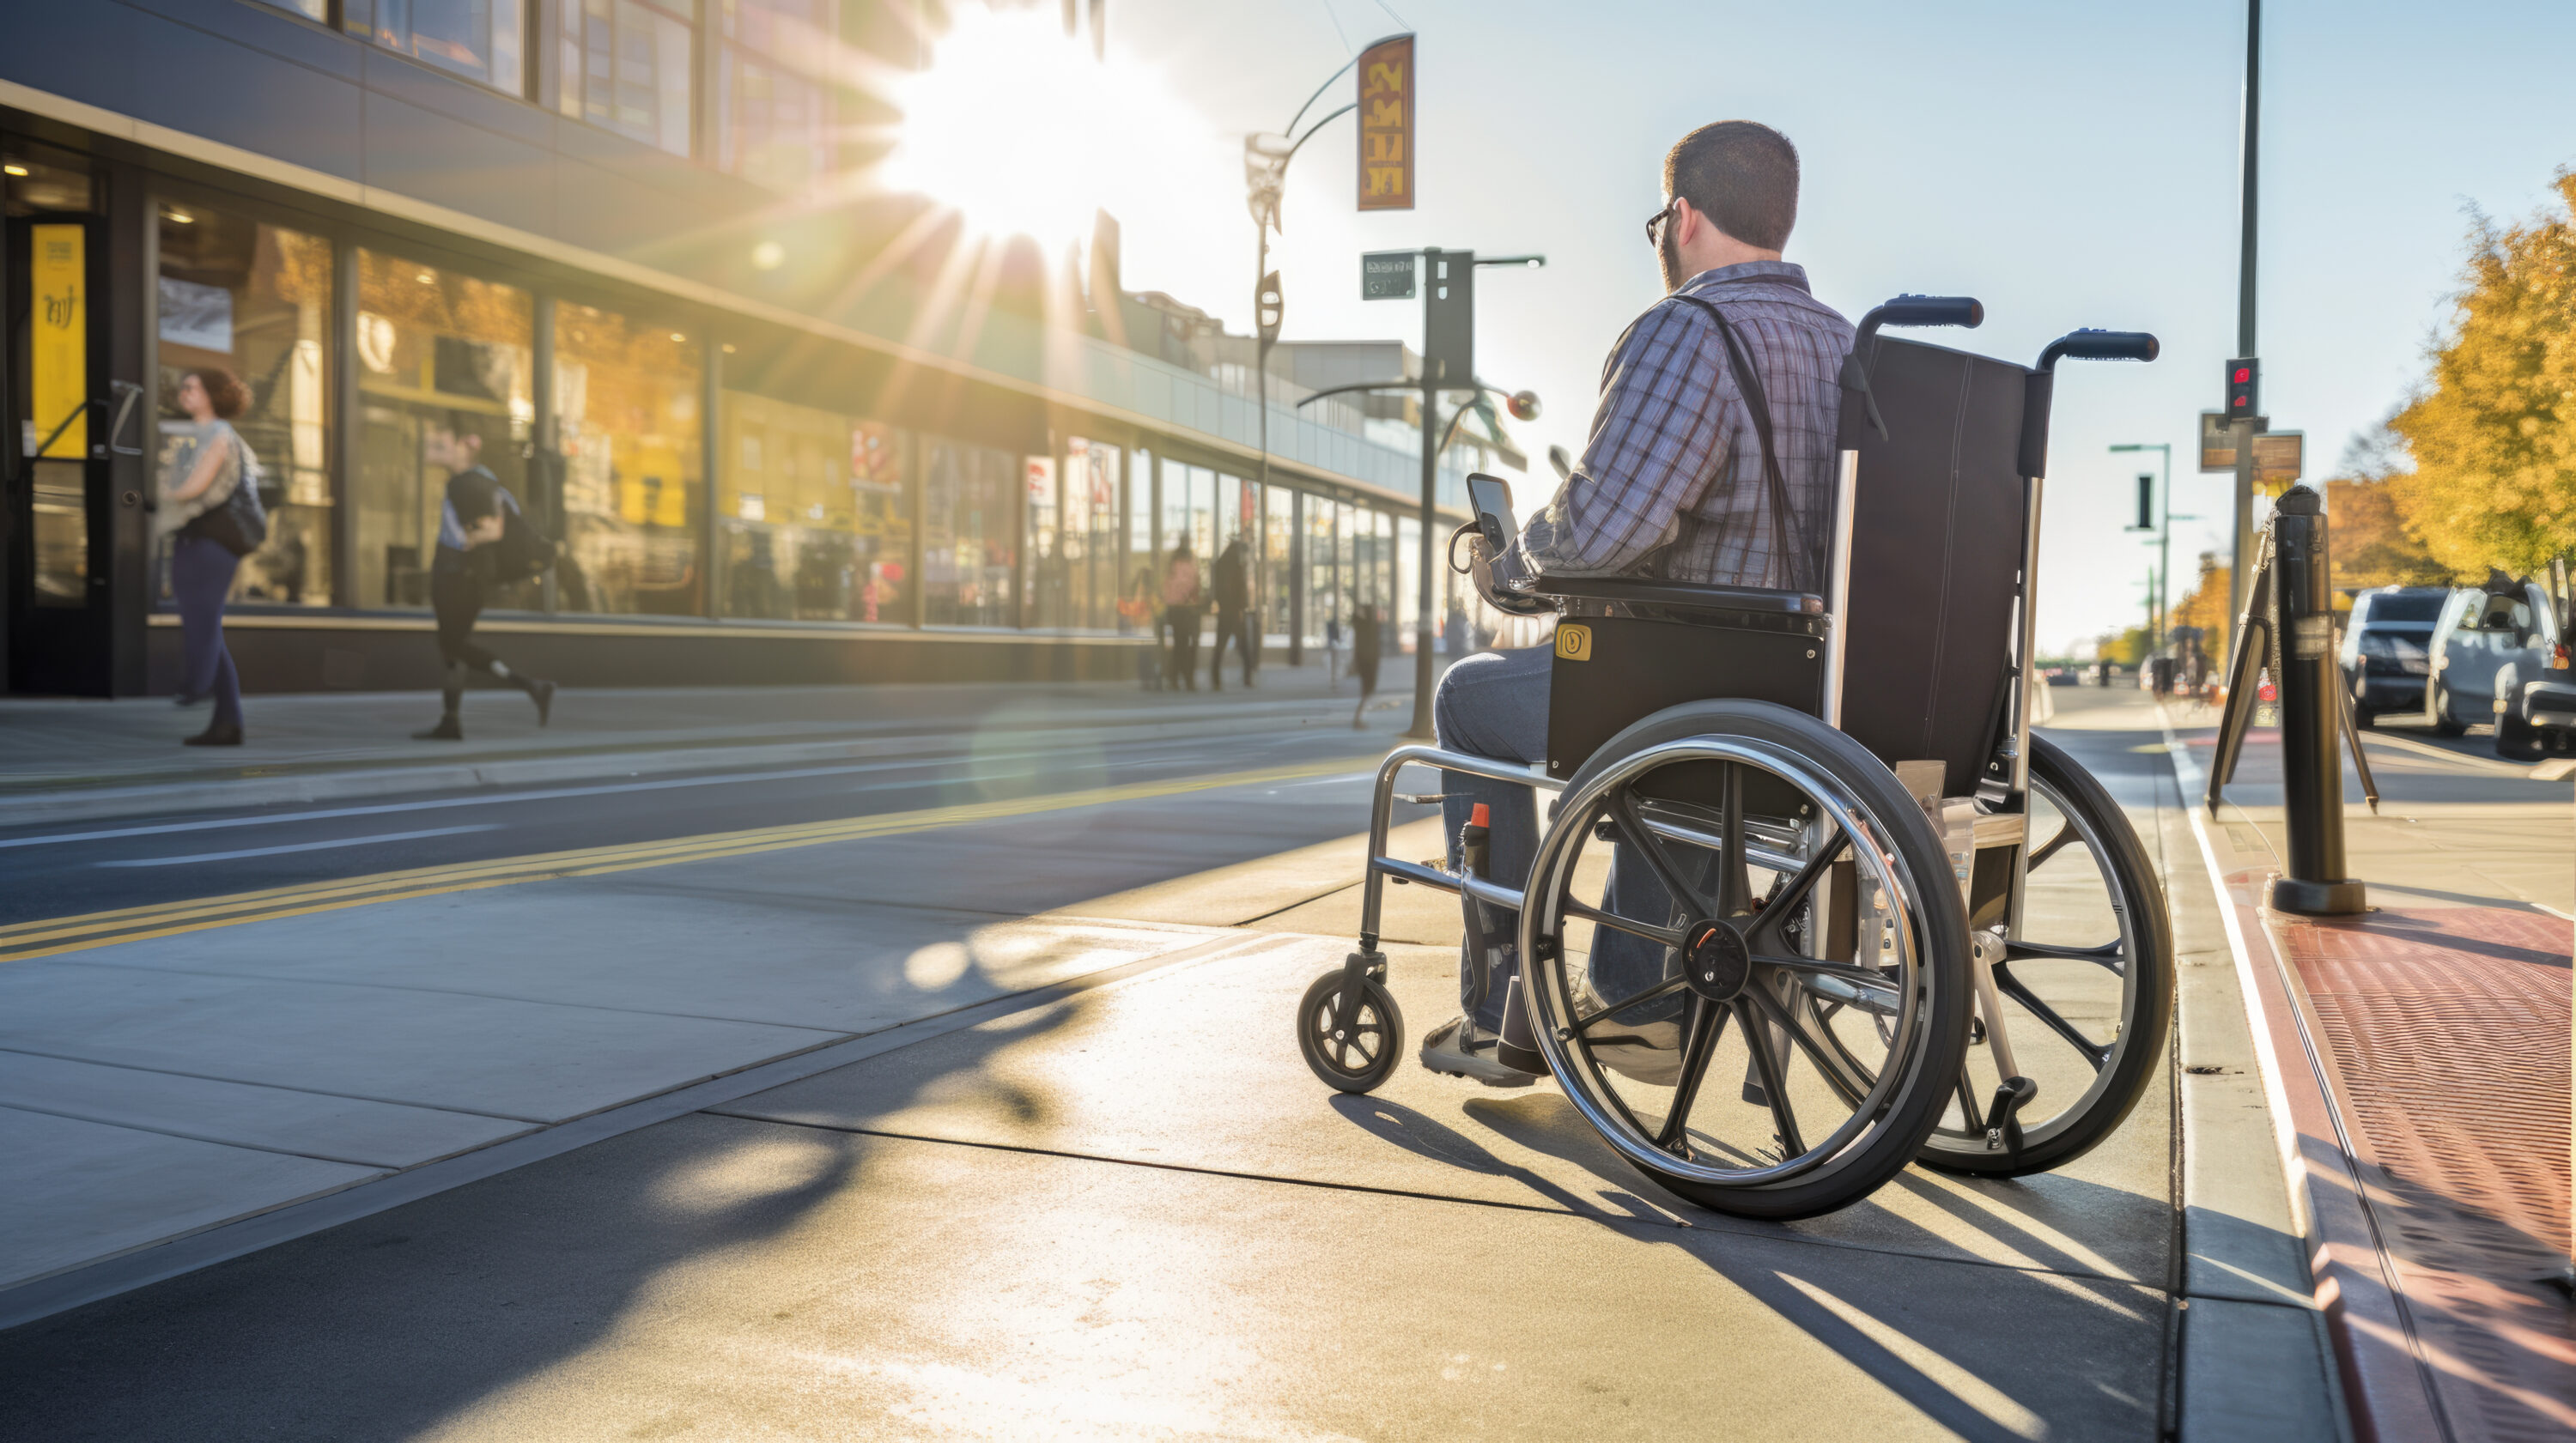 henkilö pyörätuolissa odottamassa julkista liikennettä saavutettavassa ympäristössä